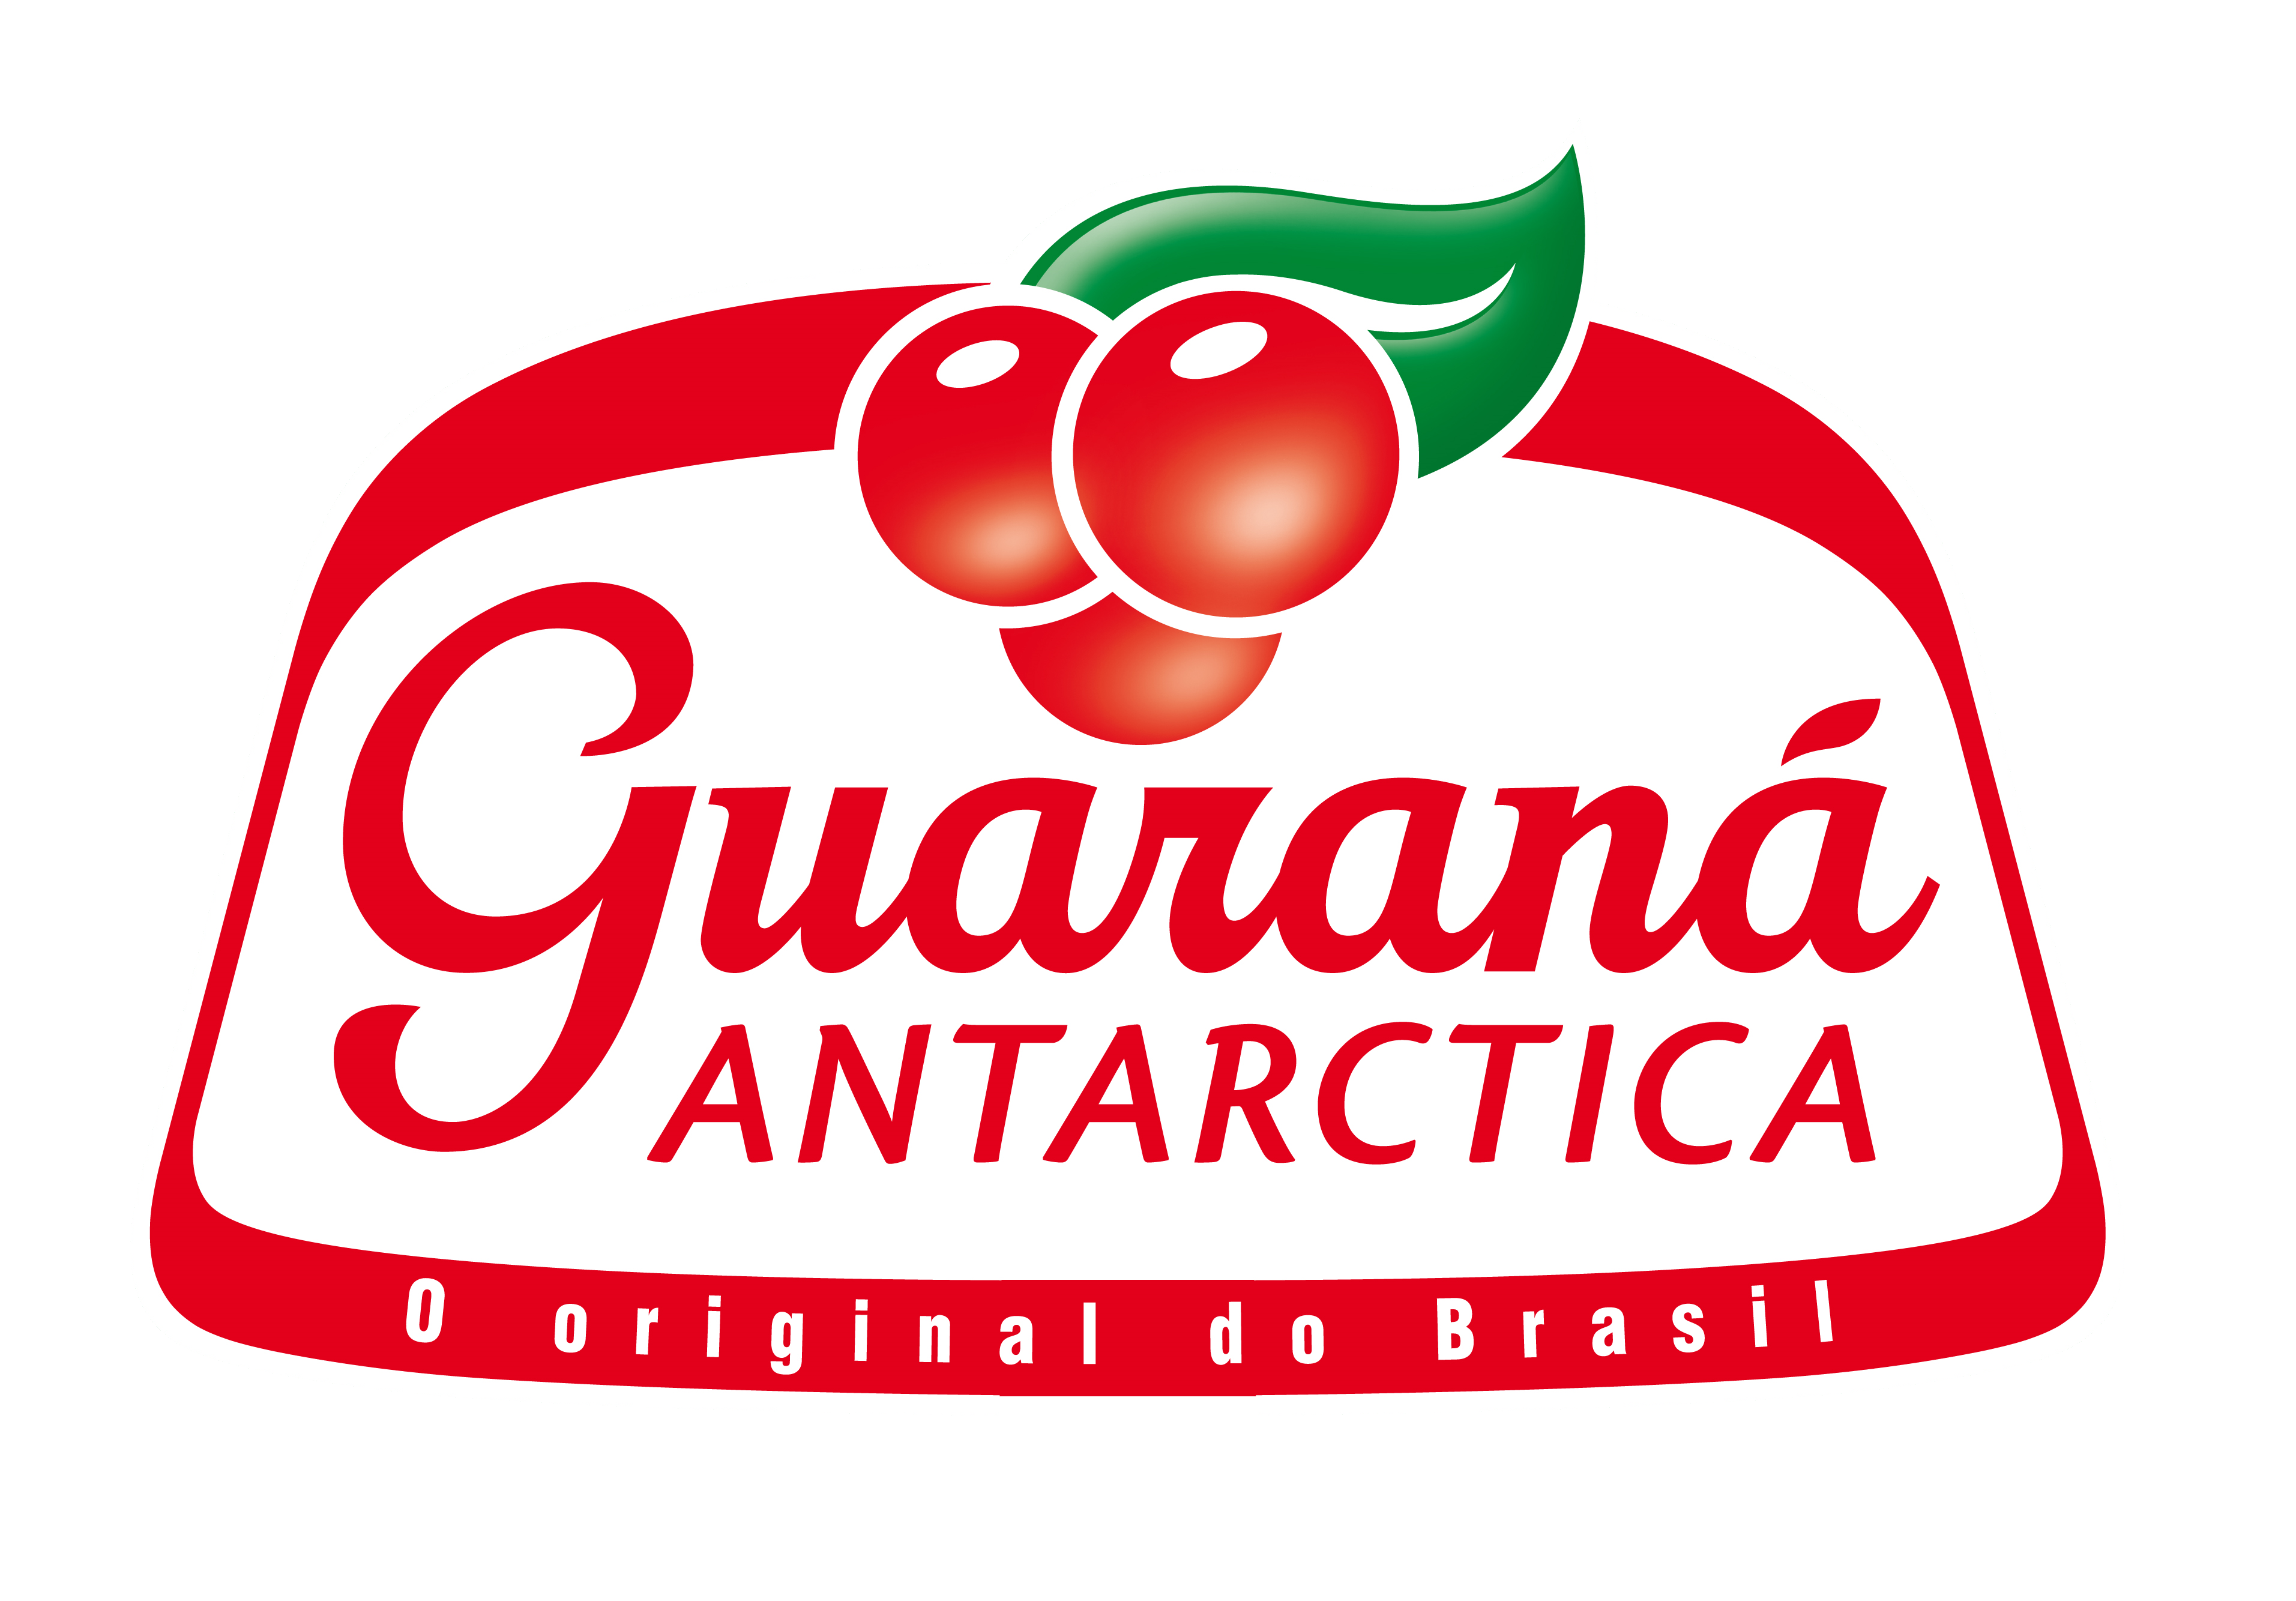 Brand guarana antartica